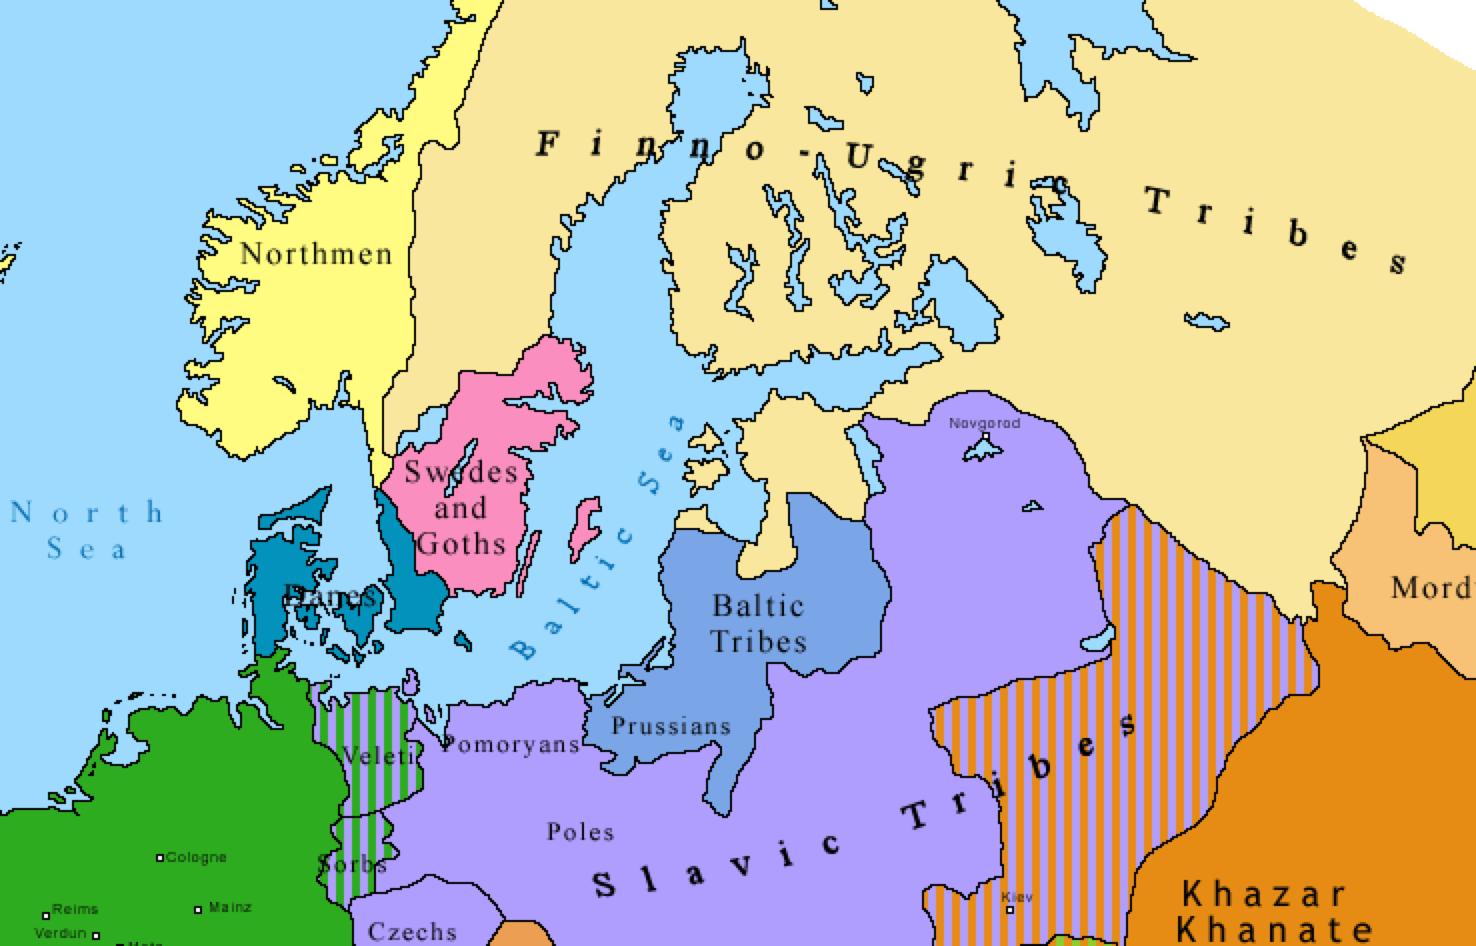 769年的北欧文化分布, 全都是部落(此处引用几张ck2的图)而芬兰寒冷